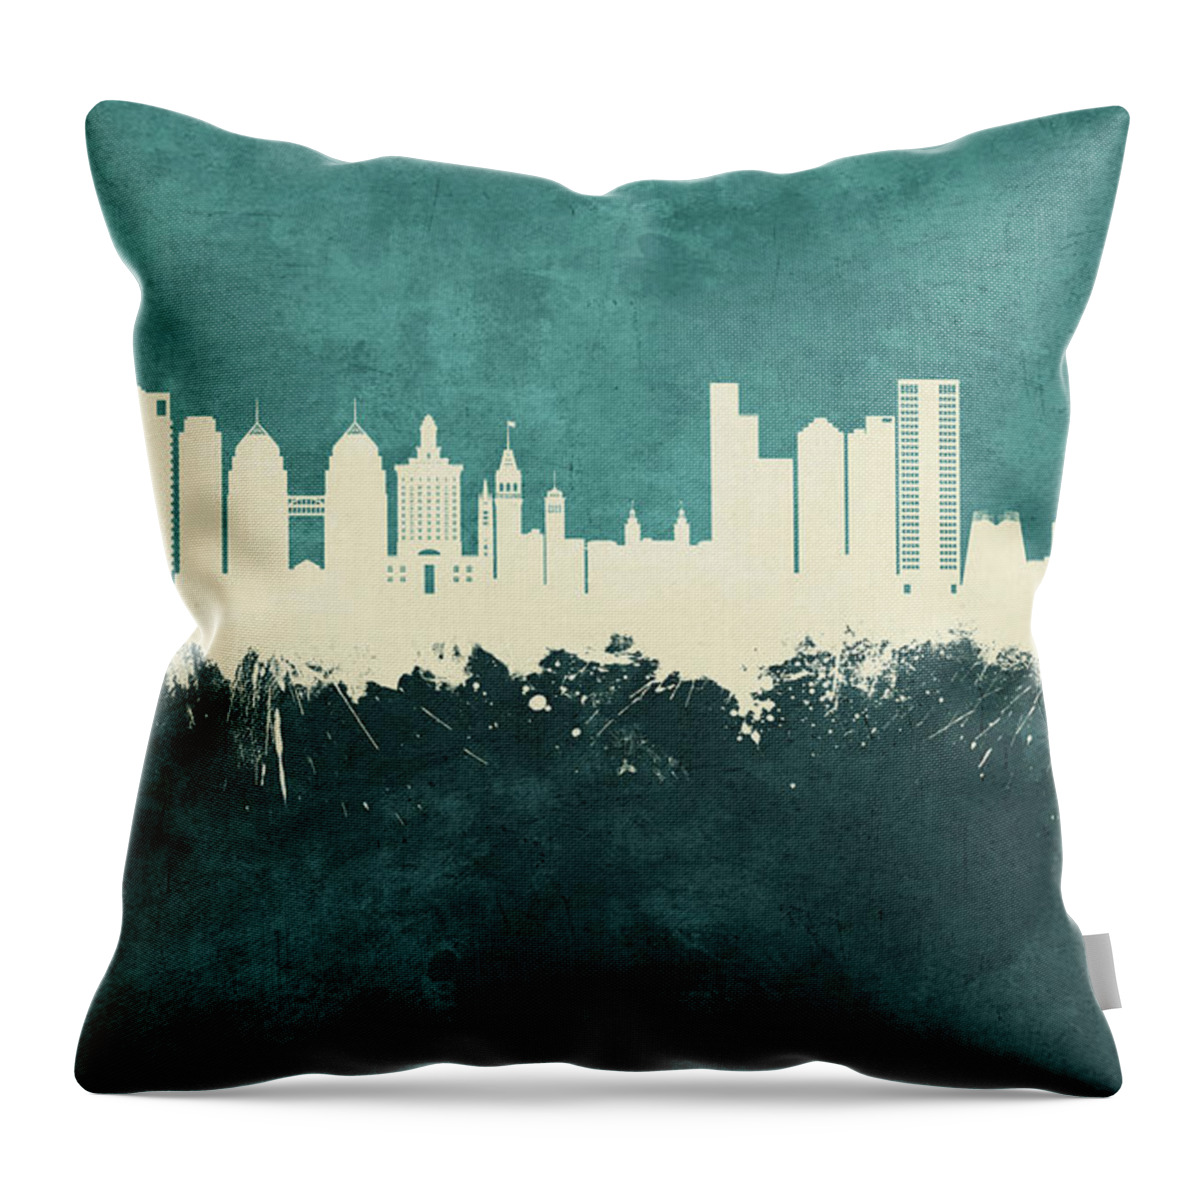 Oakland Throw Pillow featuring the digital art Oakland California Skyline #19 by Michael Tompsett